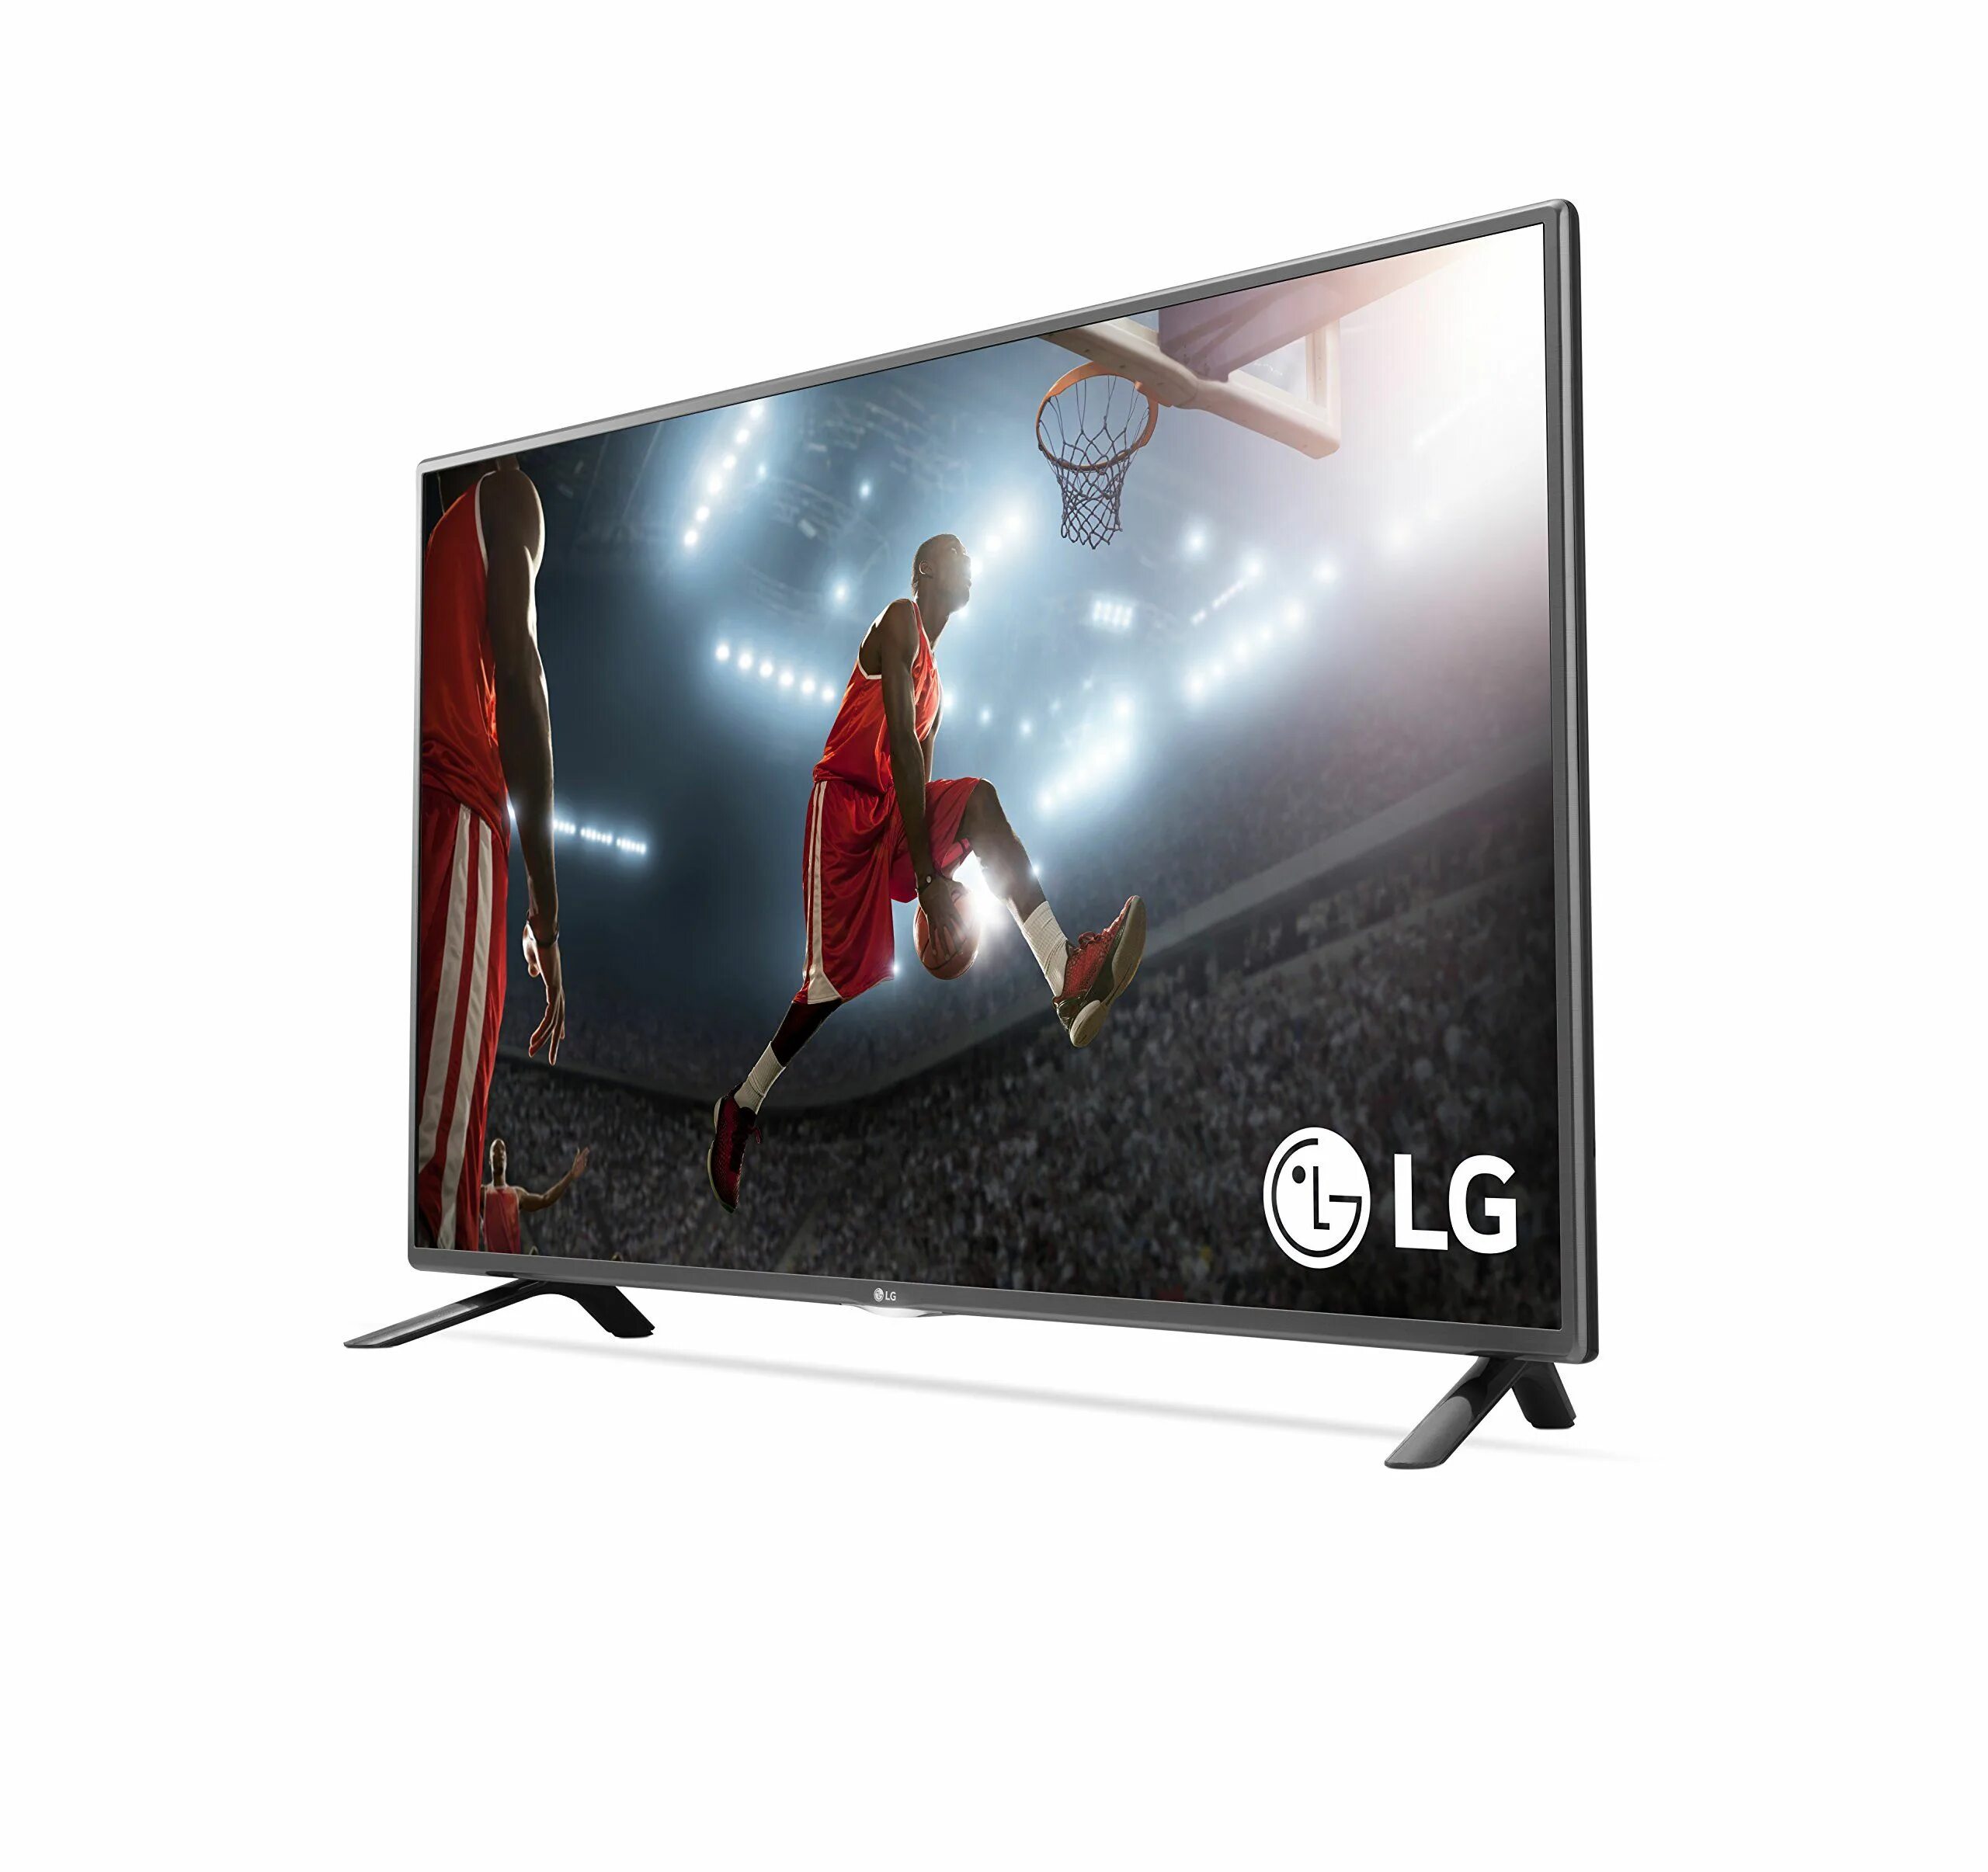 Lg телевизор смарт 50. LG 32 Smart 2015. LG TV 32 inch 2015. LG Smart TV 2015. LG 32lf5800.